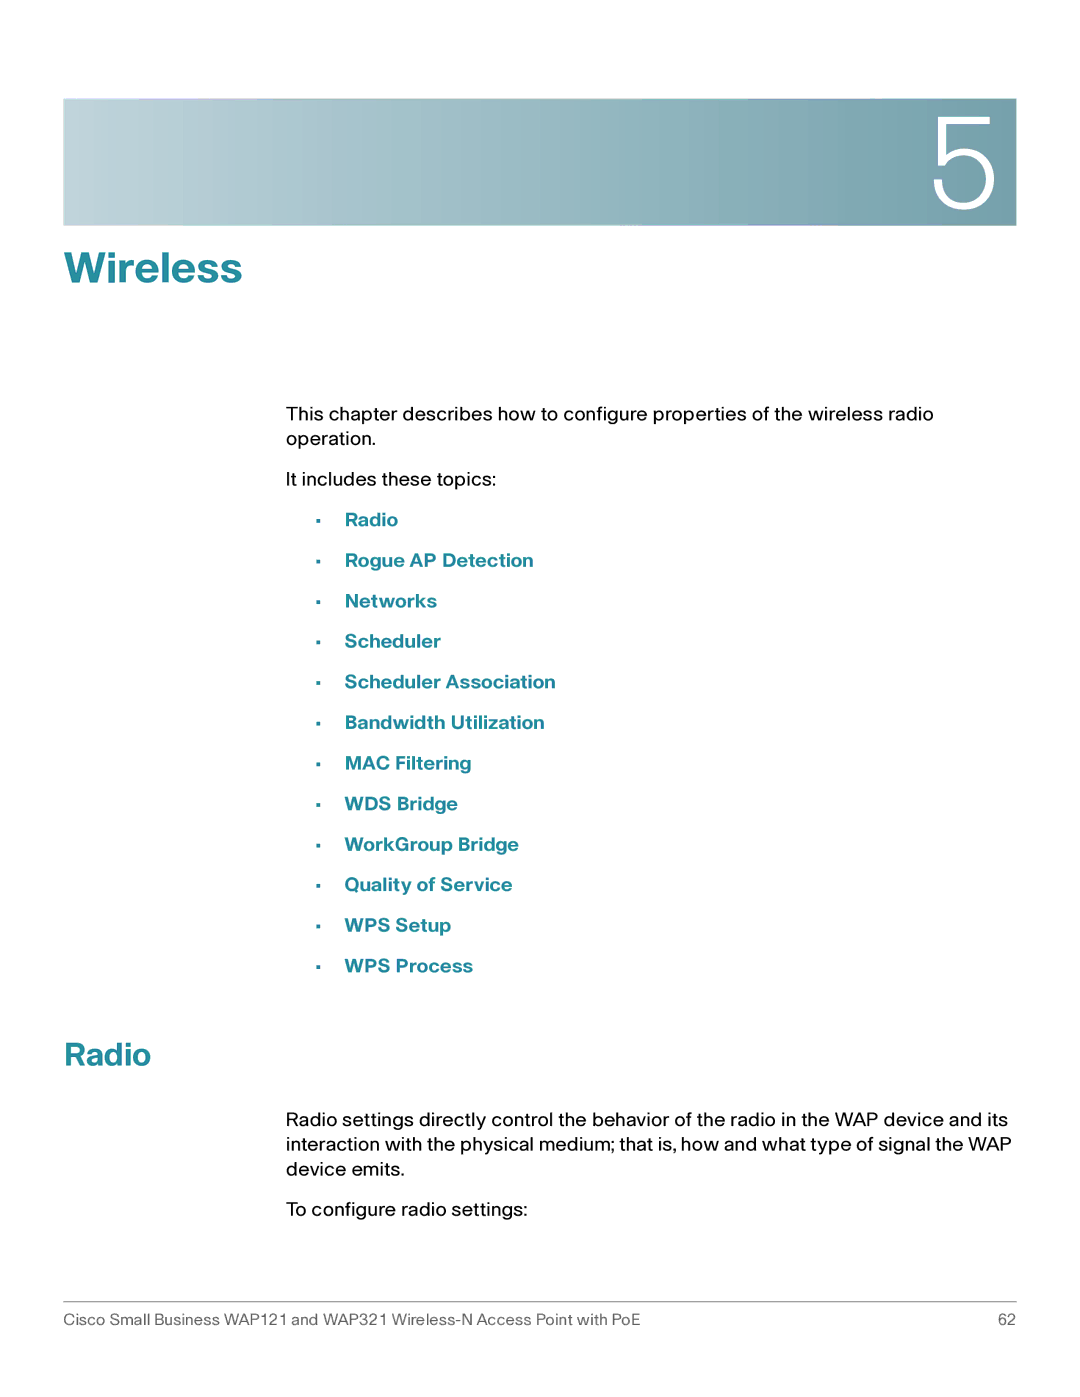 Cisco Systems WAP121, WAP321 manual Wireless, Radio 